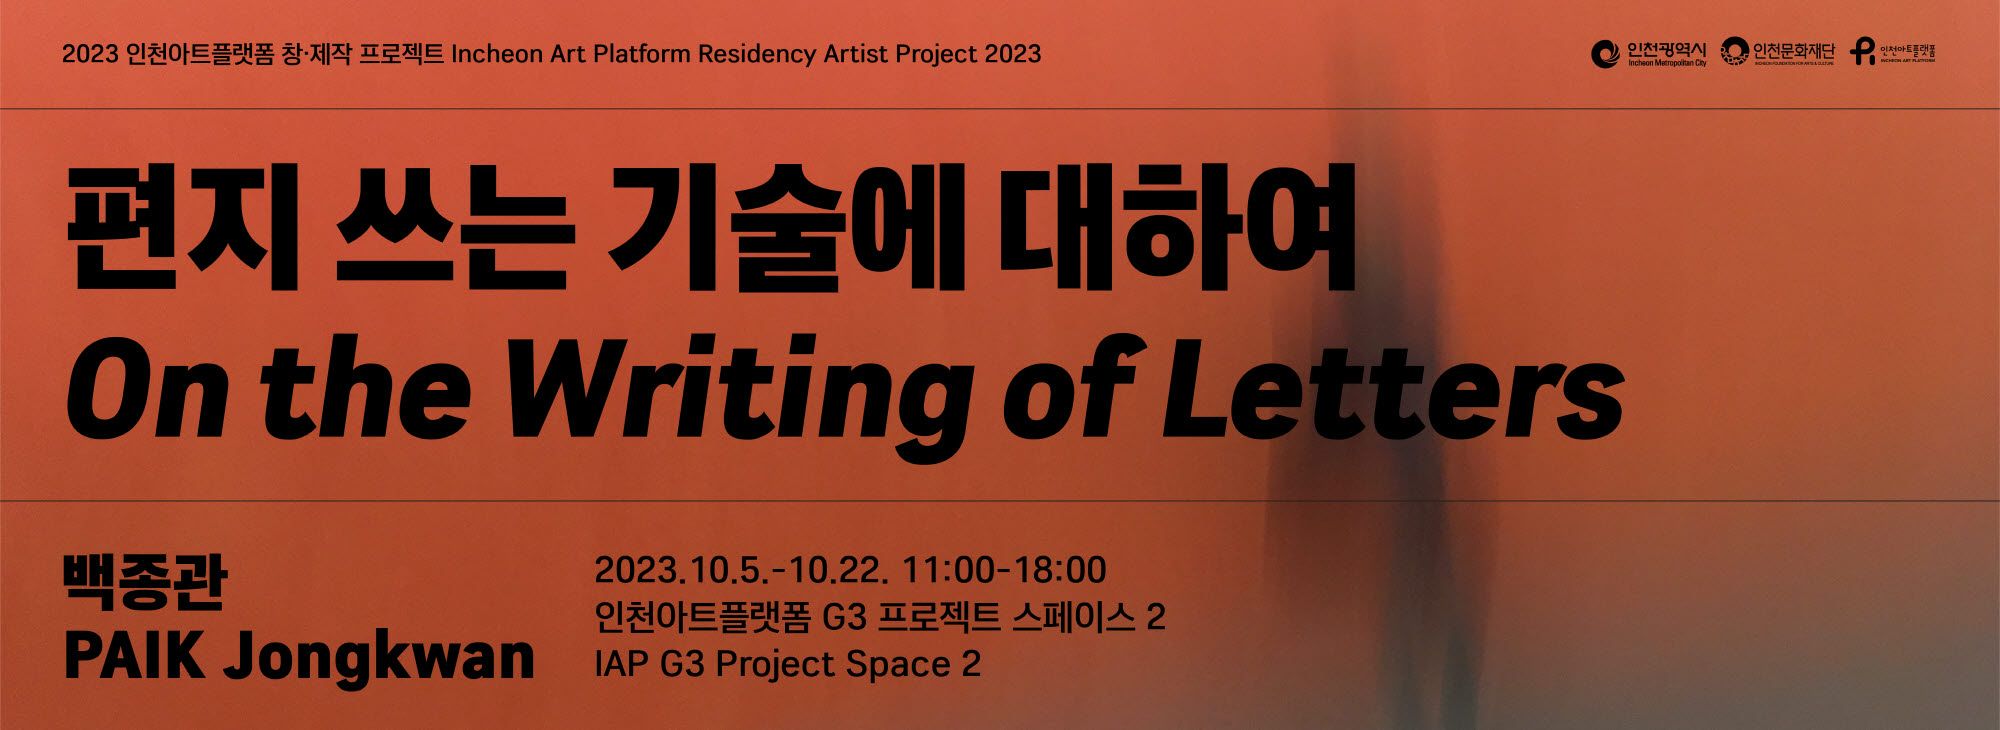 2023 인천아트플랫폼 창제작 프로젝트 4. 백종관 《편지 쓰는 기술에 대하여》